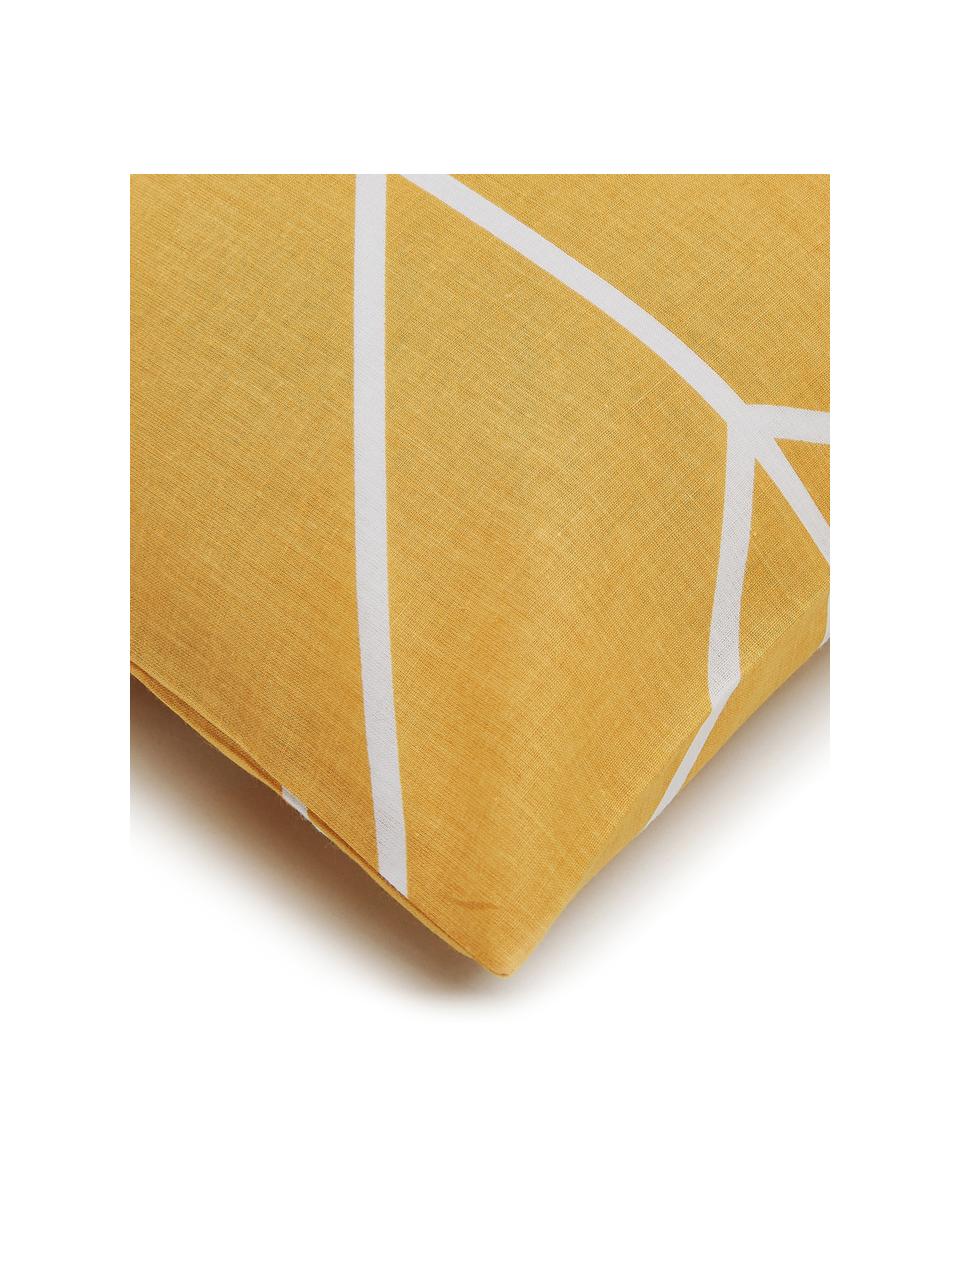 Baumwoll-Bettwäsche Mirja in Gelb mit grafischem Muster, Webart: Renforcé Fadendichte 144 , Gelb, gemustert, 200 x 200 cm + 2 Kissen 80 x 80 cm